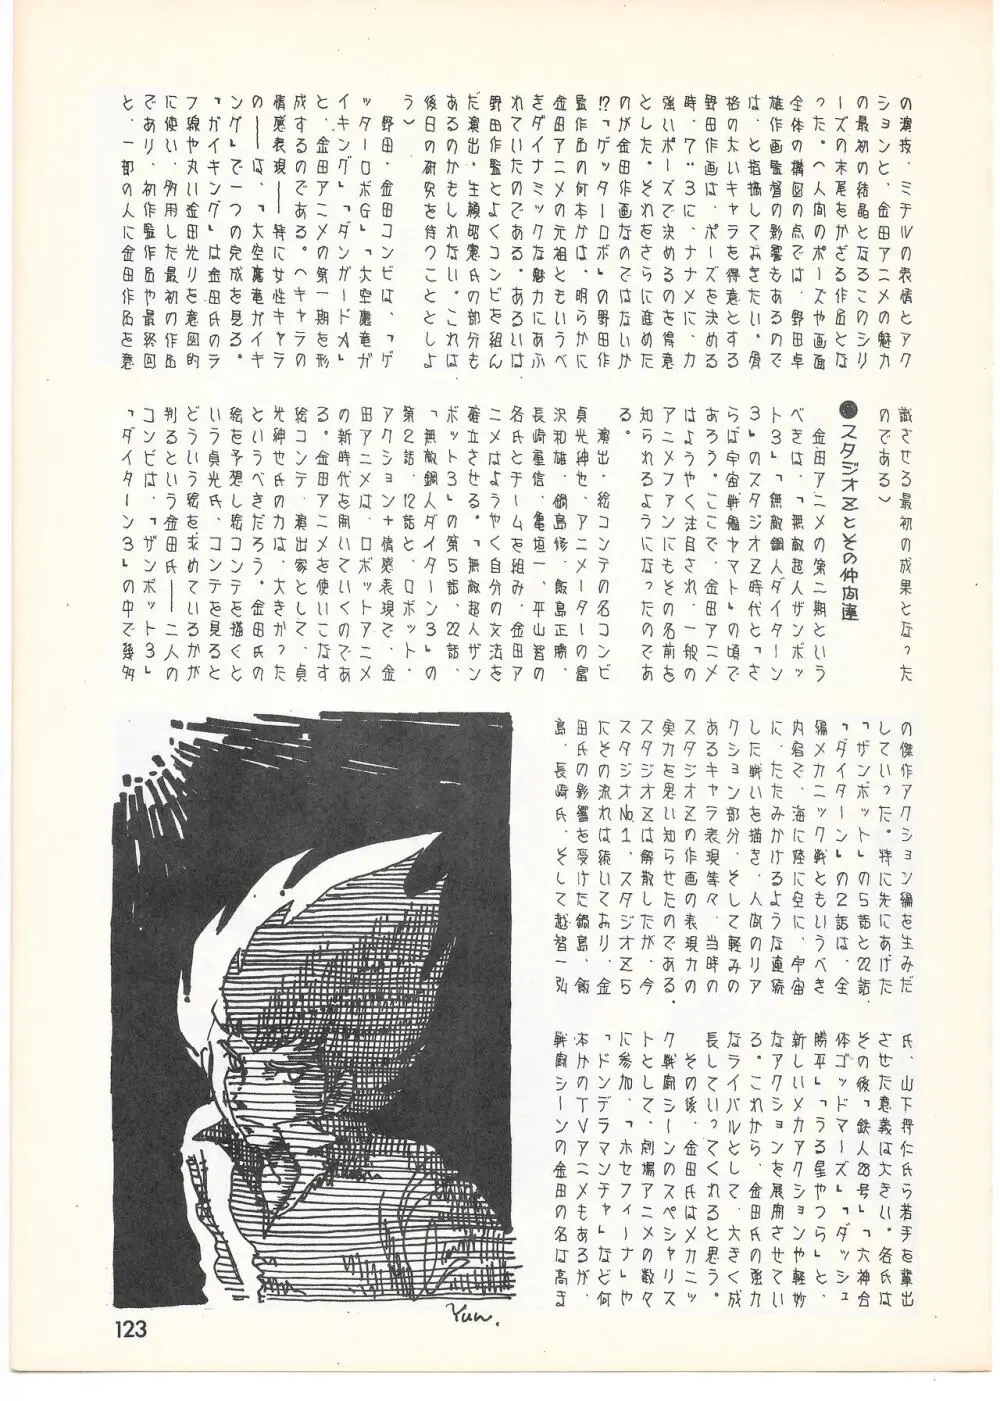 THE ANIMATOR 1 金田伊功特集号 118ページ